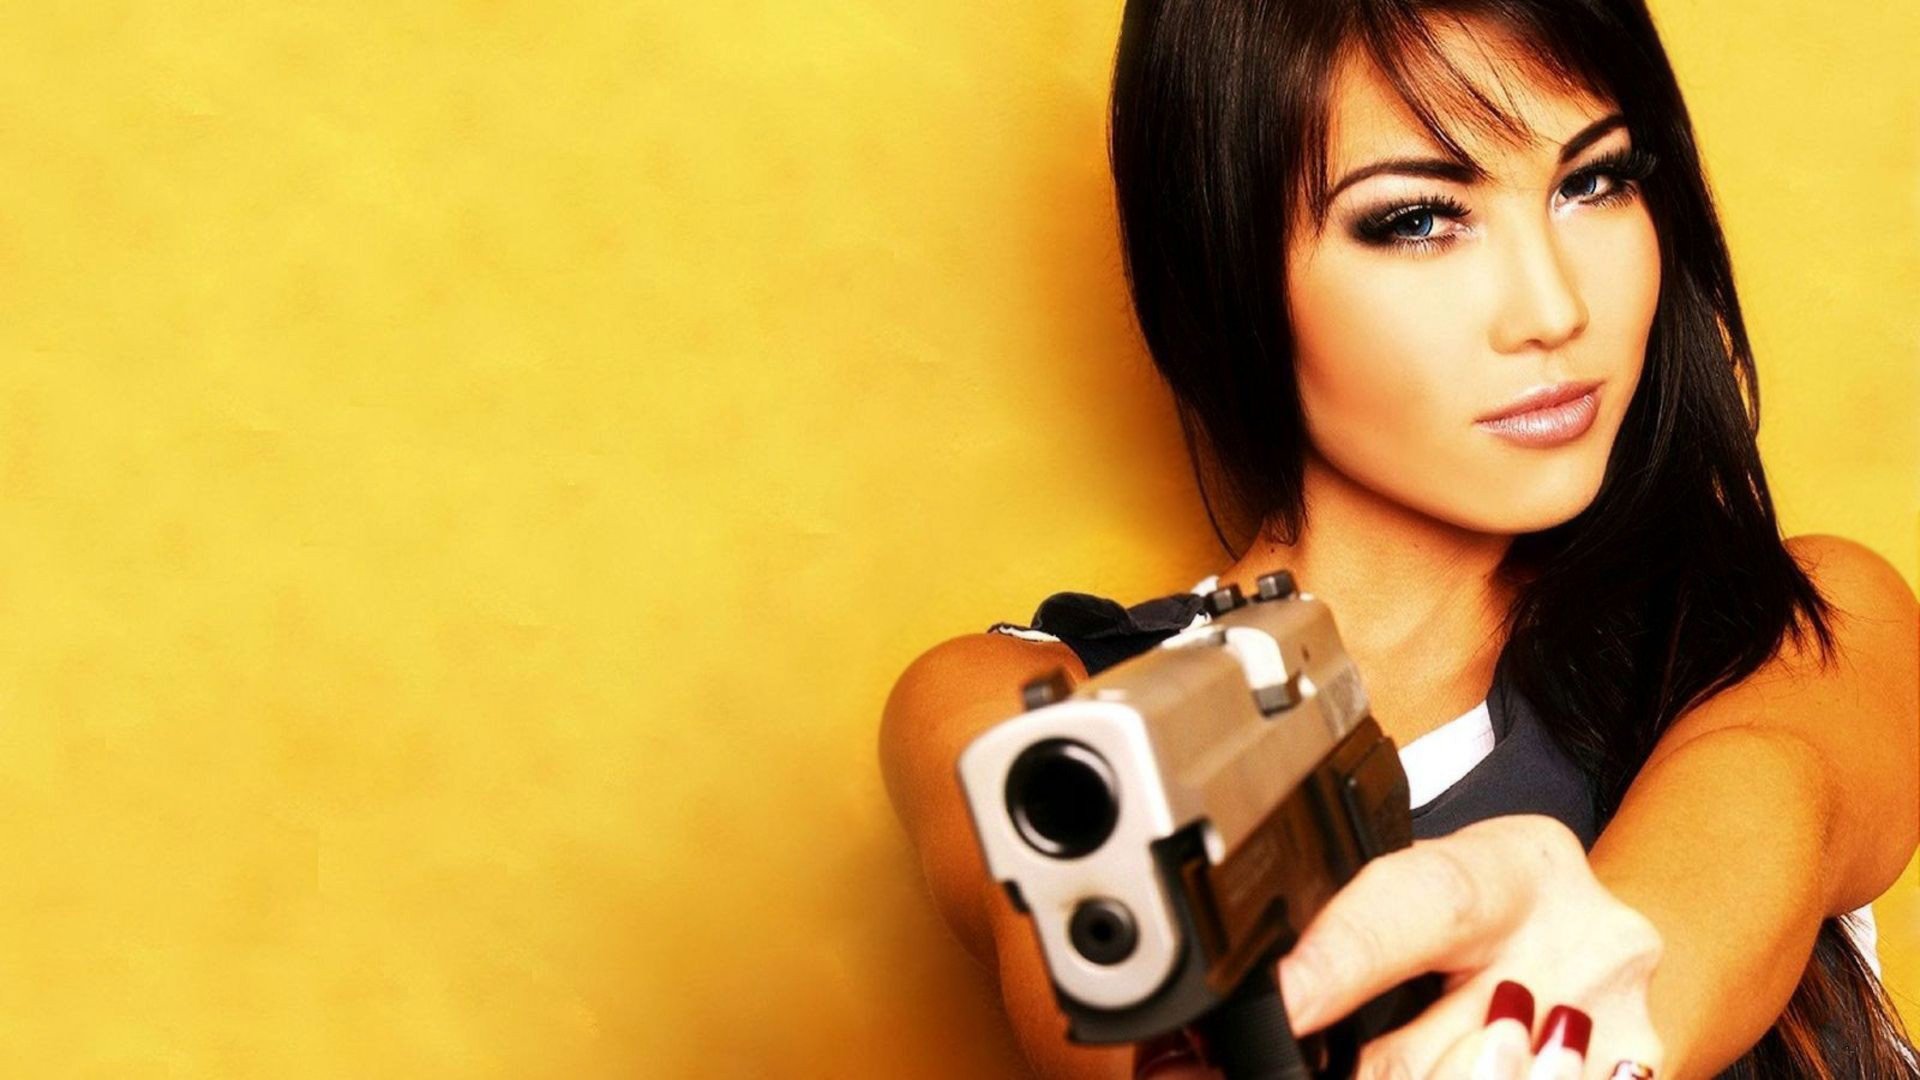 Girl with guns wallpaper